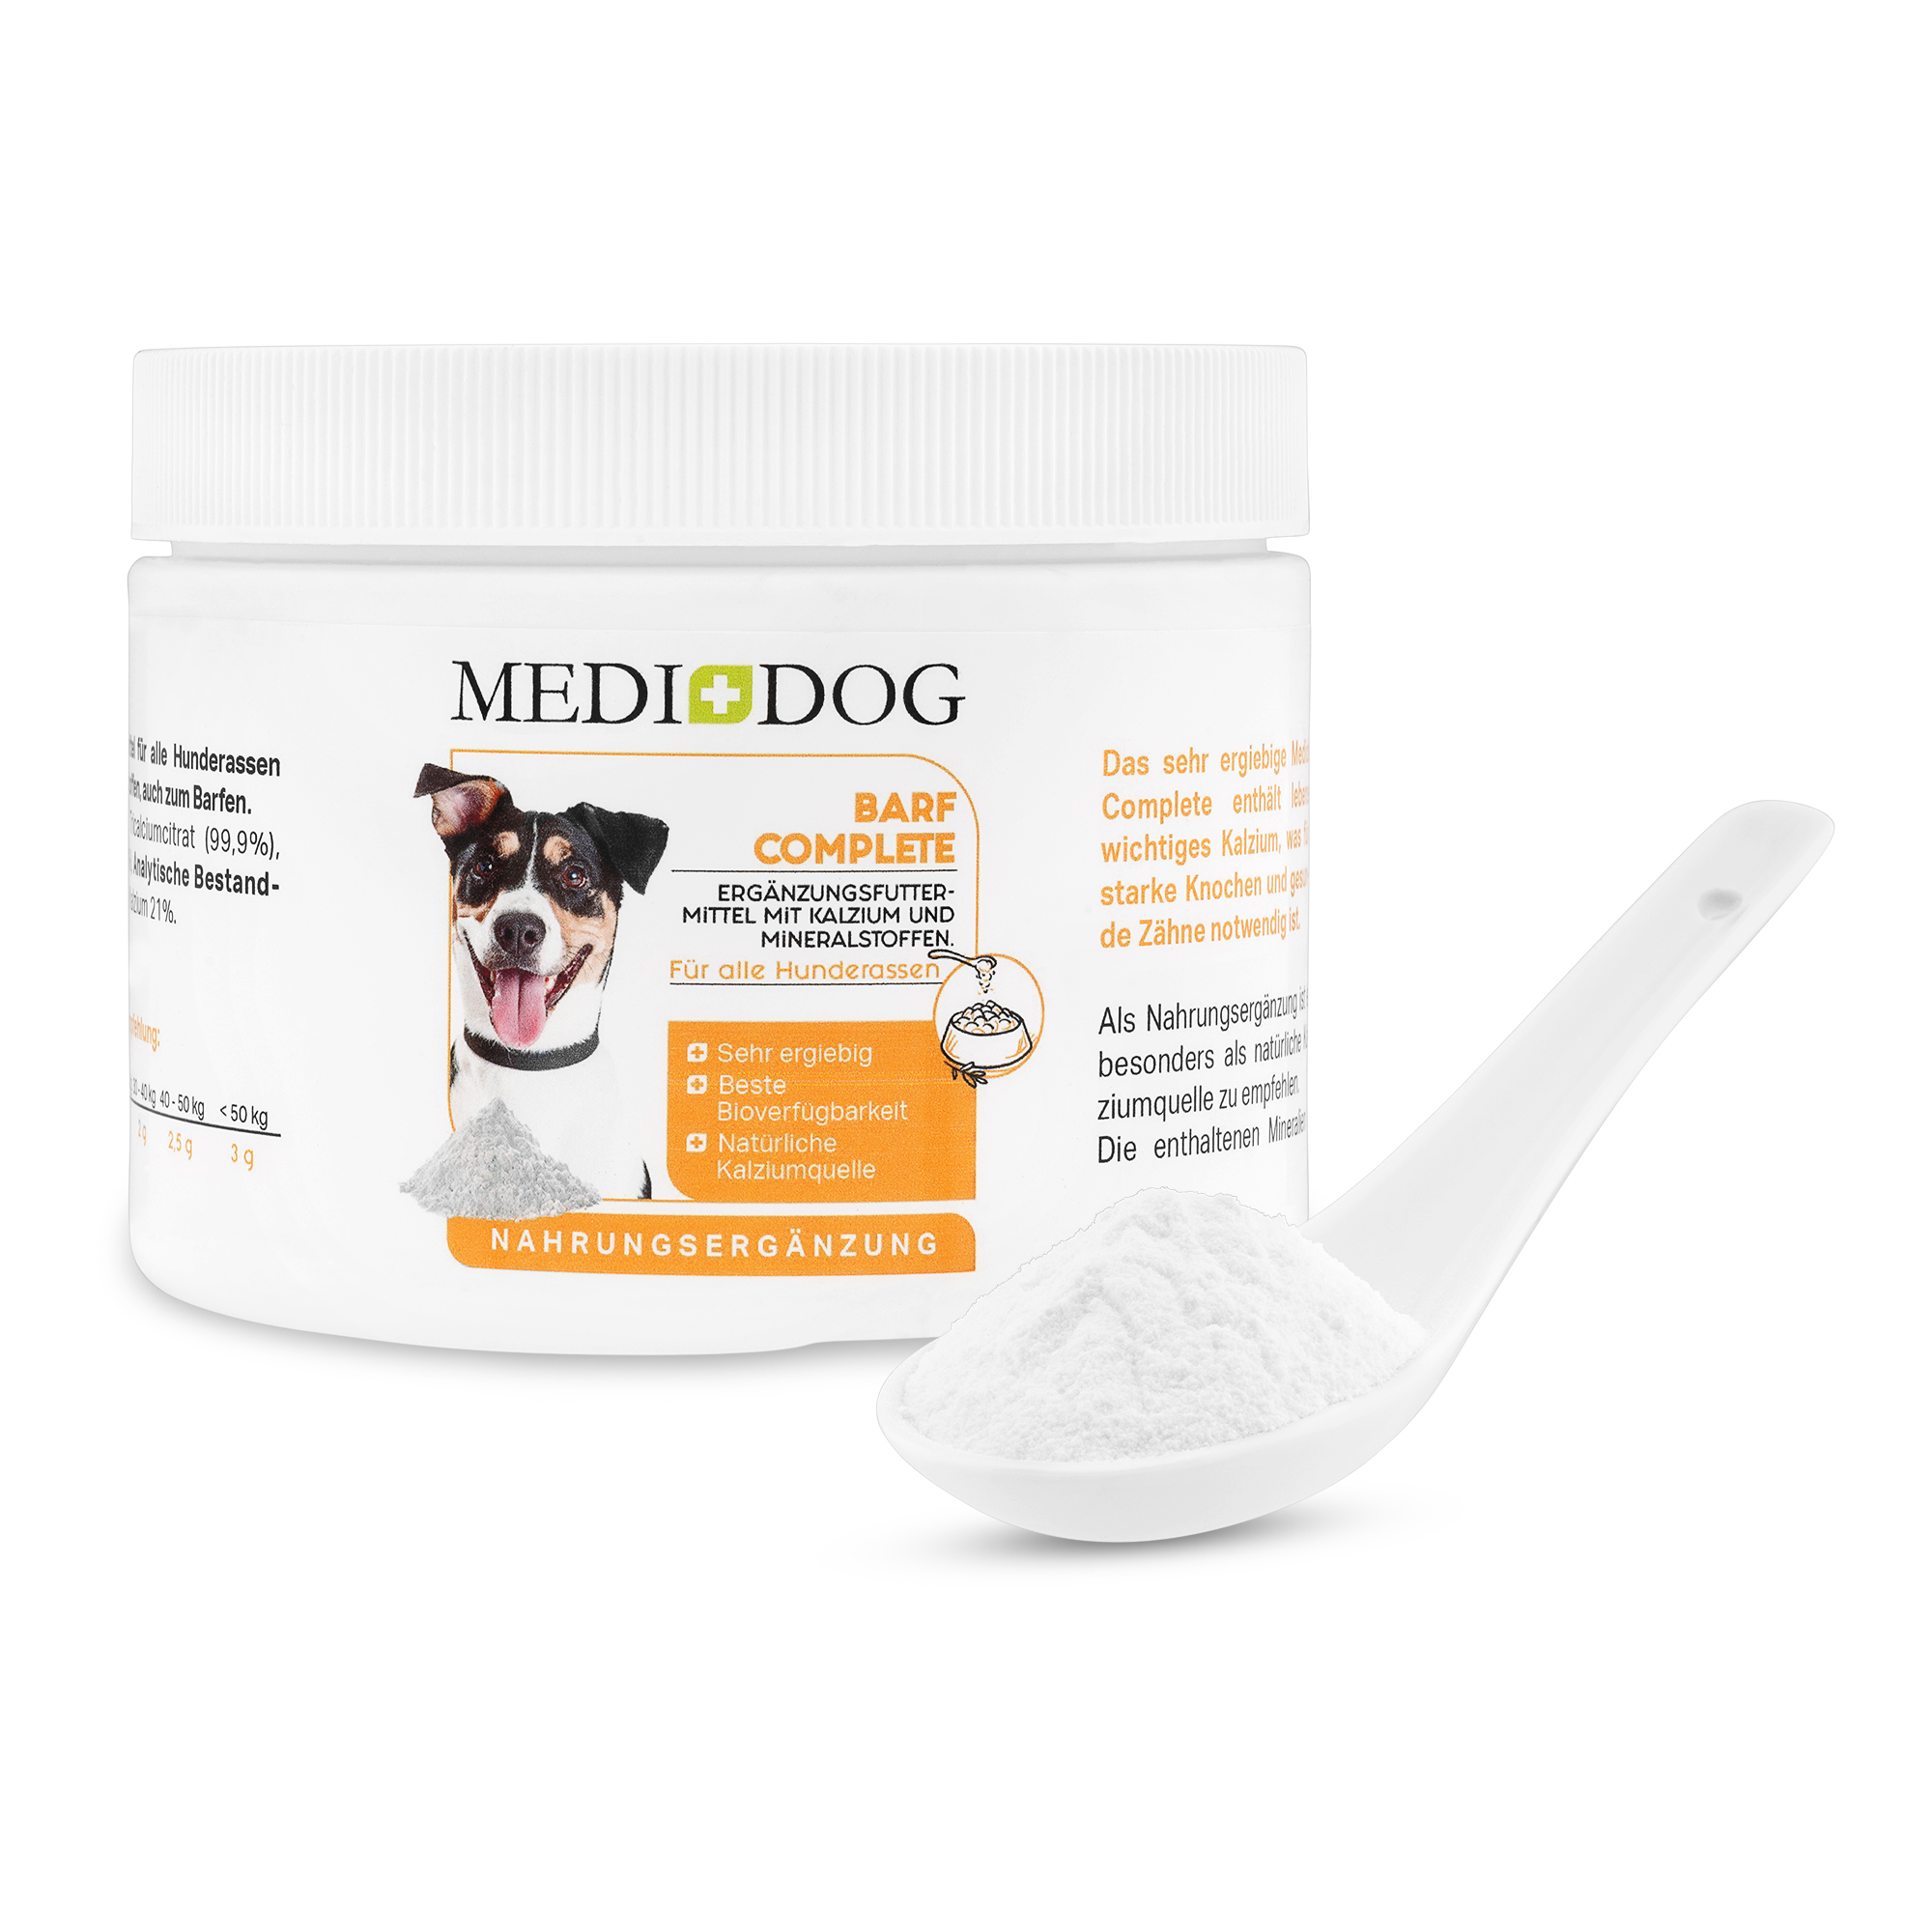 Medidog Barf Complete - zusätzliche Kalziumquelle für starke Zähne und gesunde Knochen bei Rohfleischfütterung für Hunde